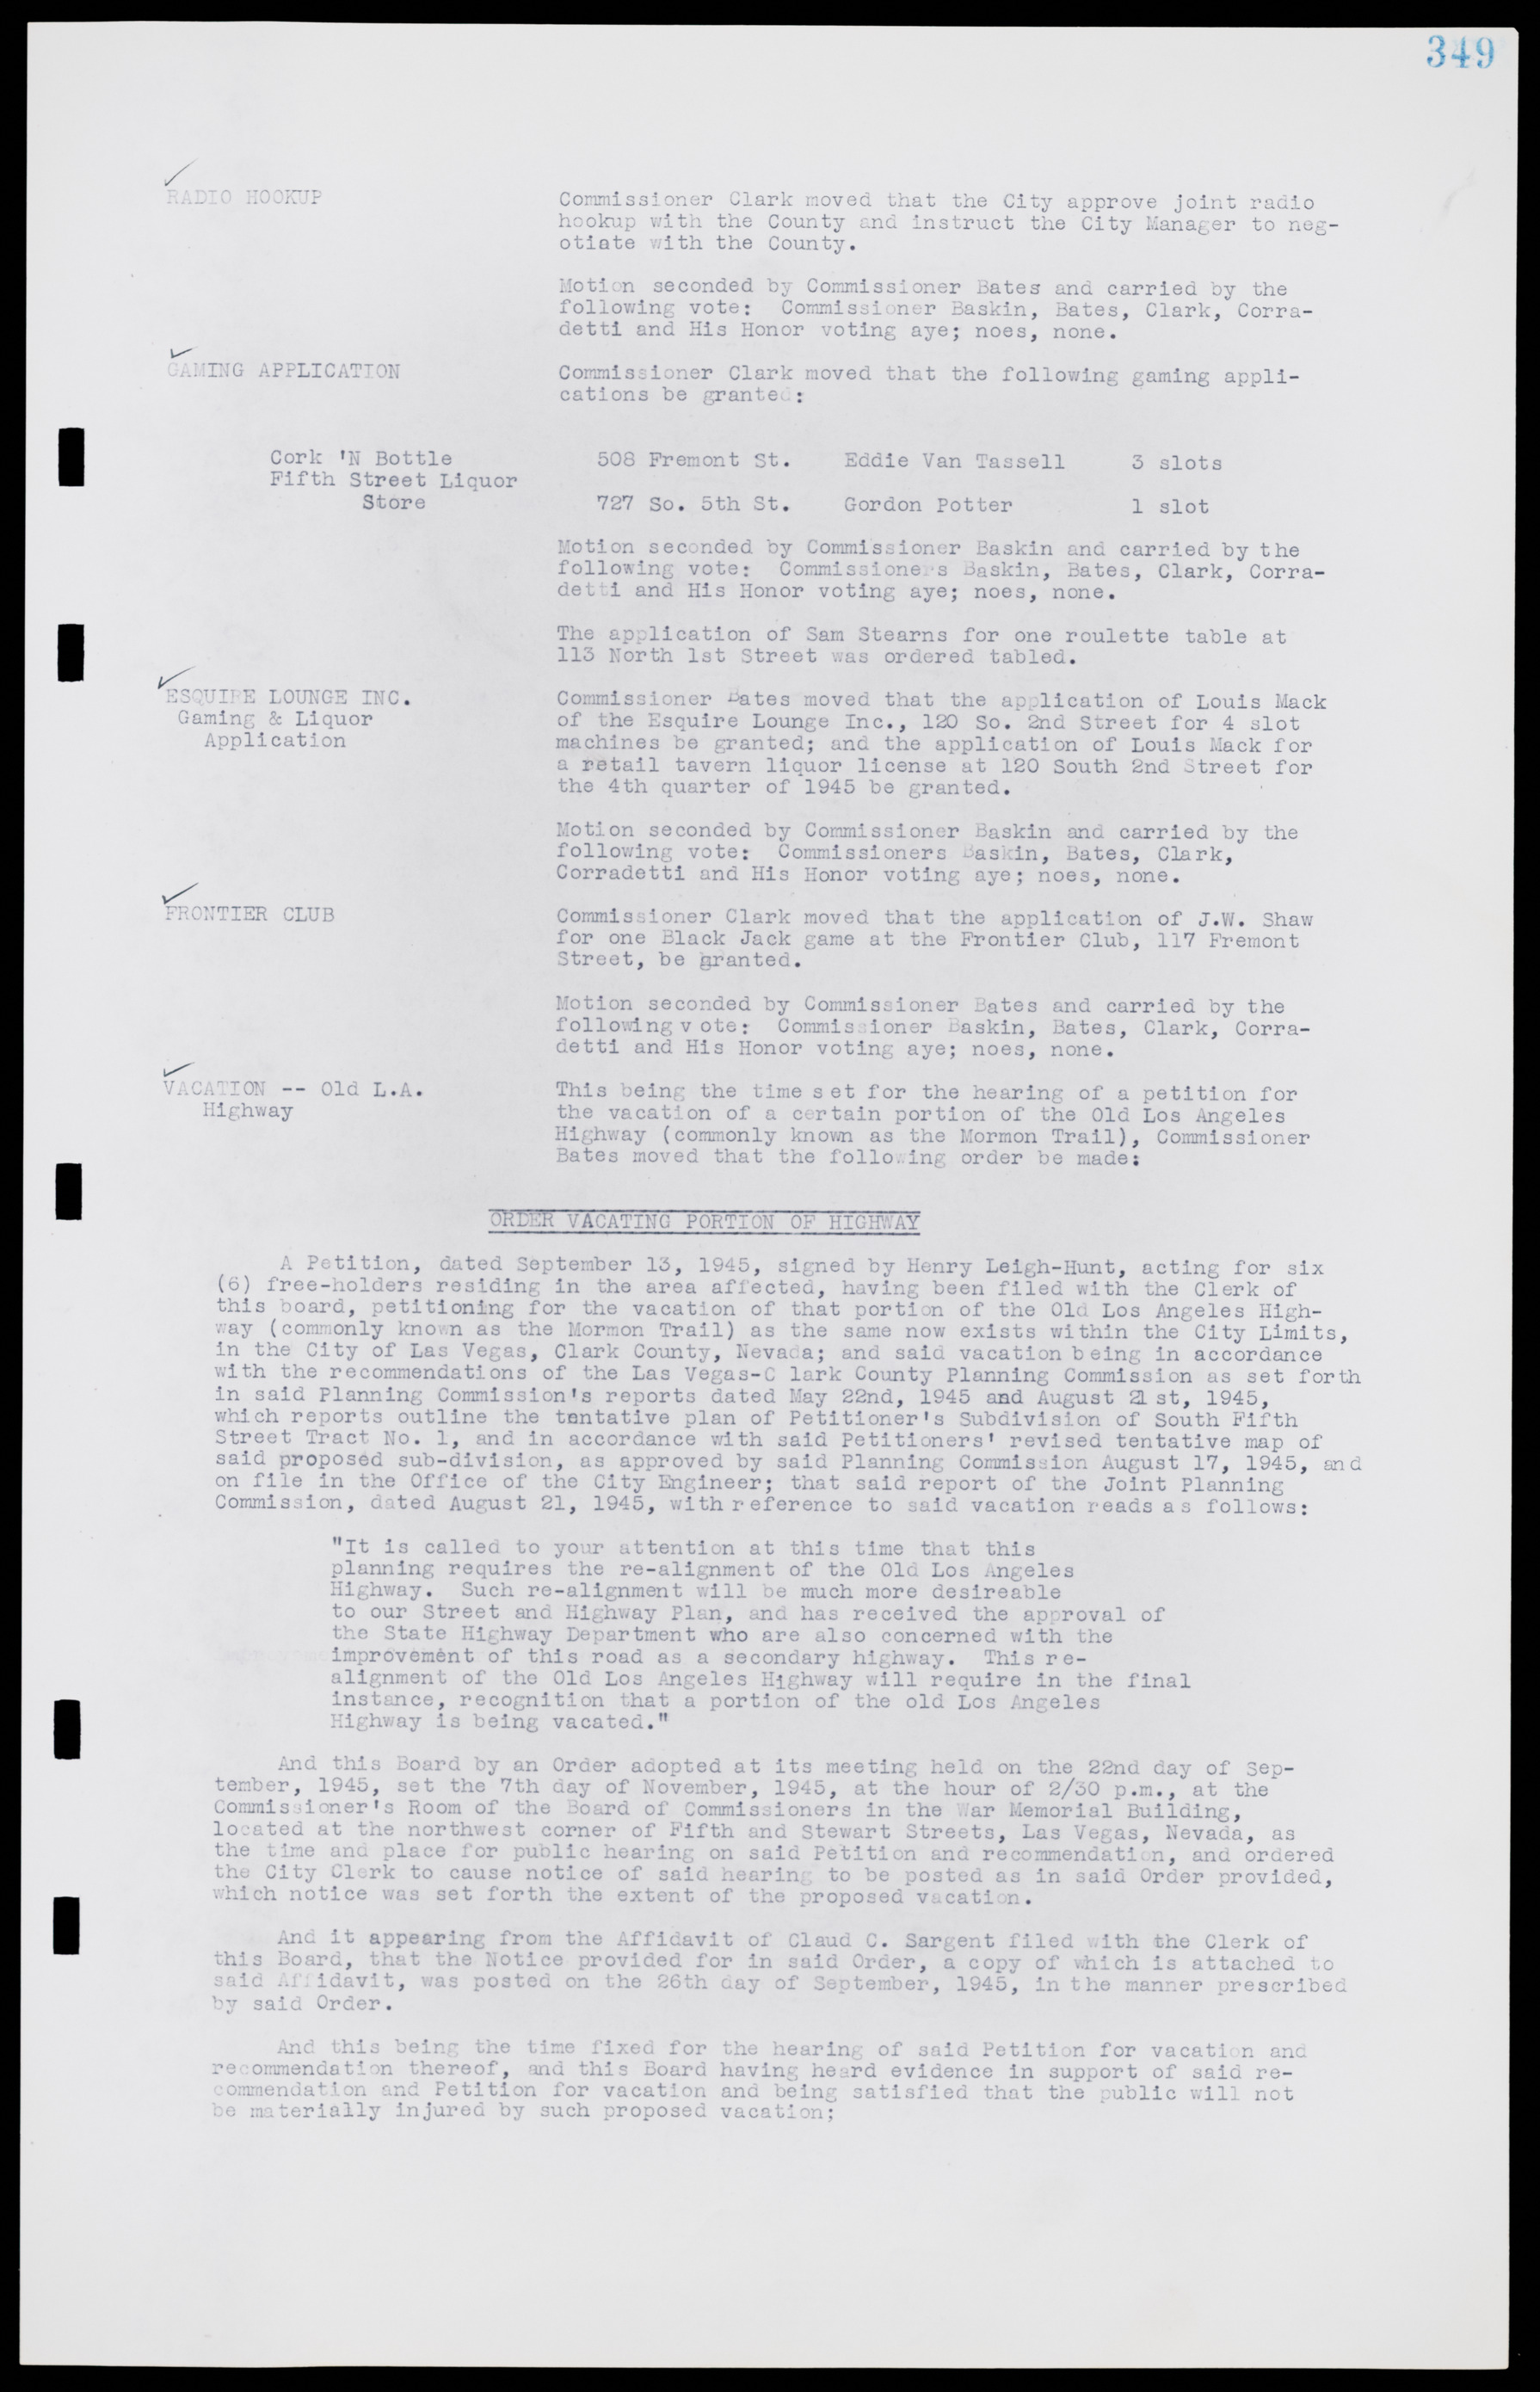 Las Vegas City Commission Minutes, August 11, 1942 to December 30, 1946, lvc000005-374